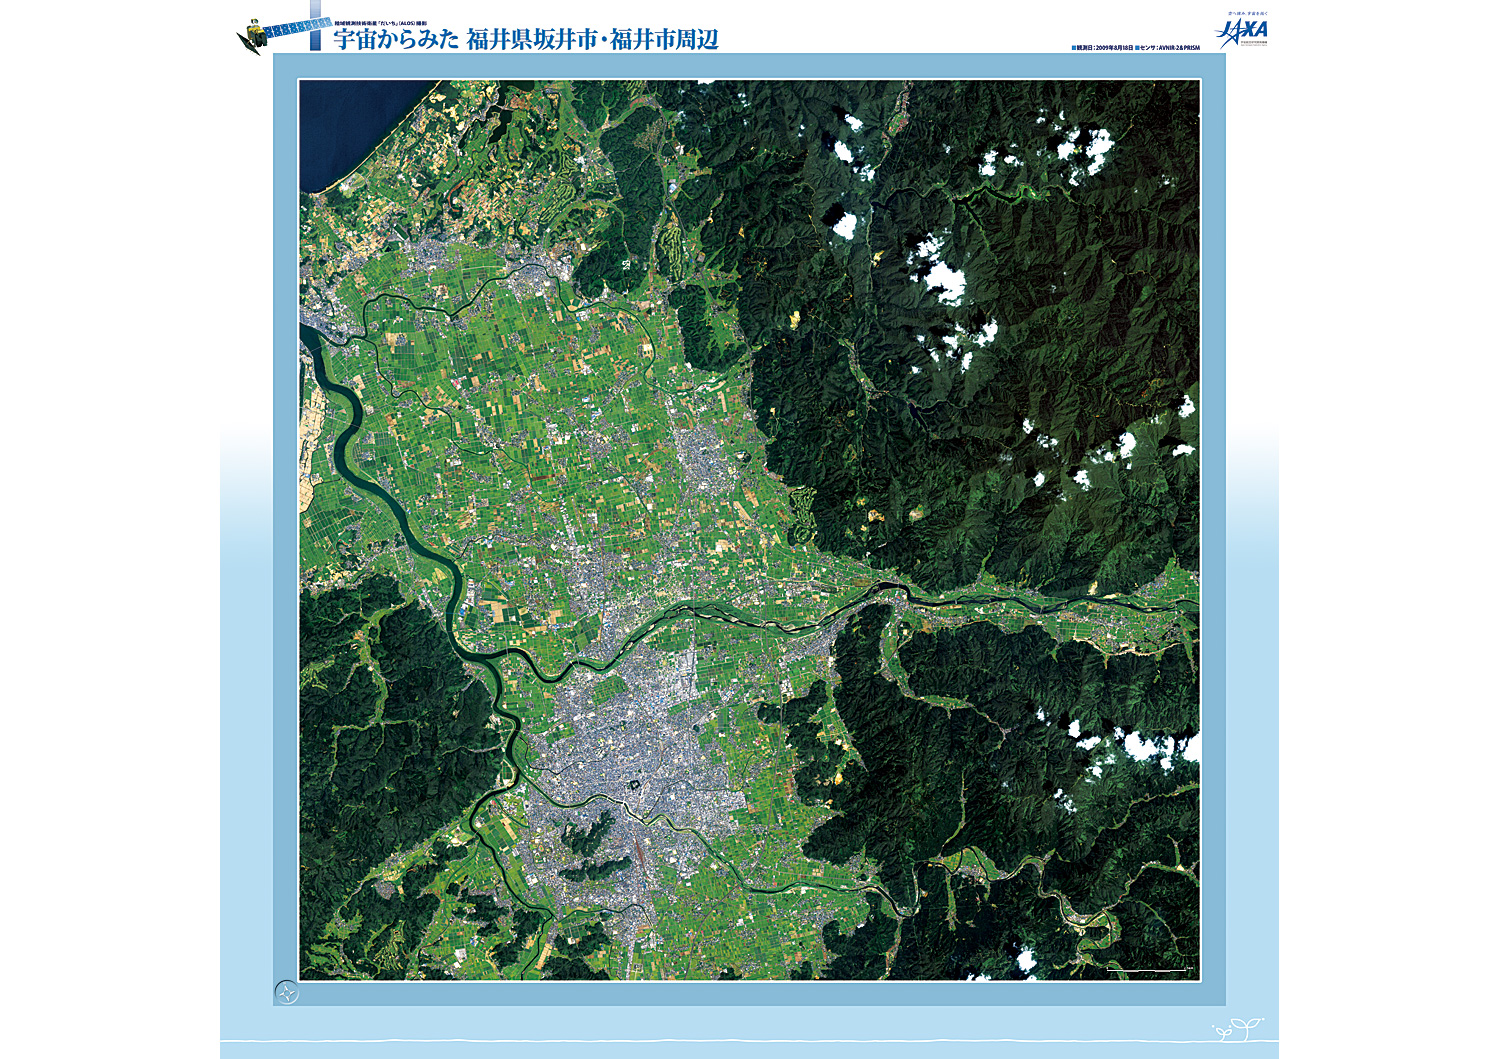 だいちから見た日本の都市 坂井市、福井市周辺:衛星画像（ポスター仕上げ）